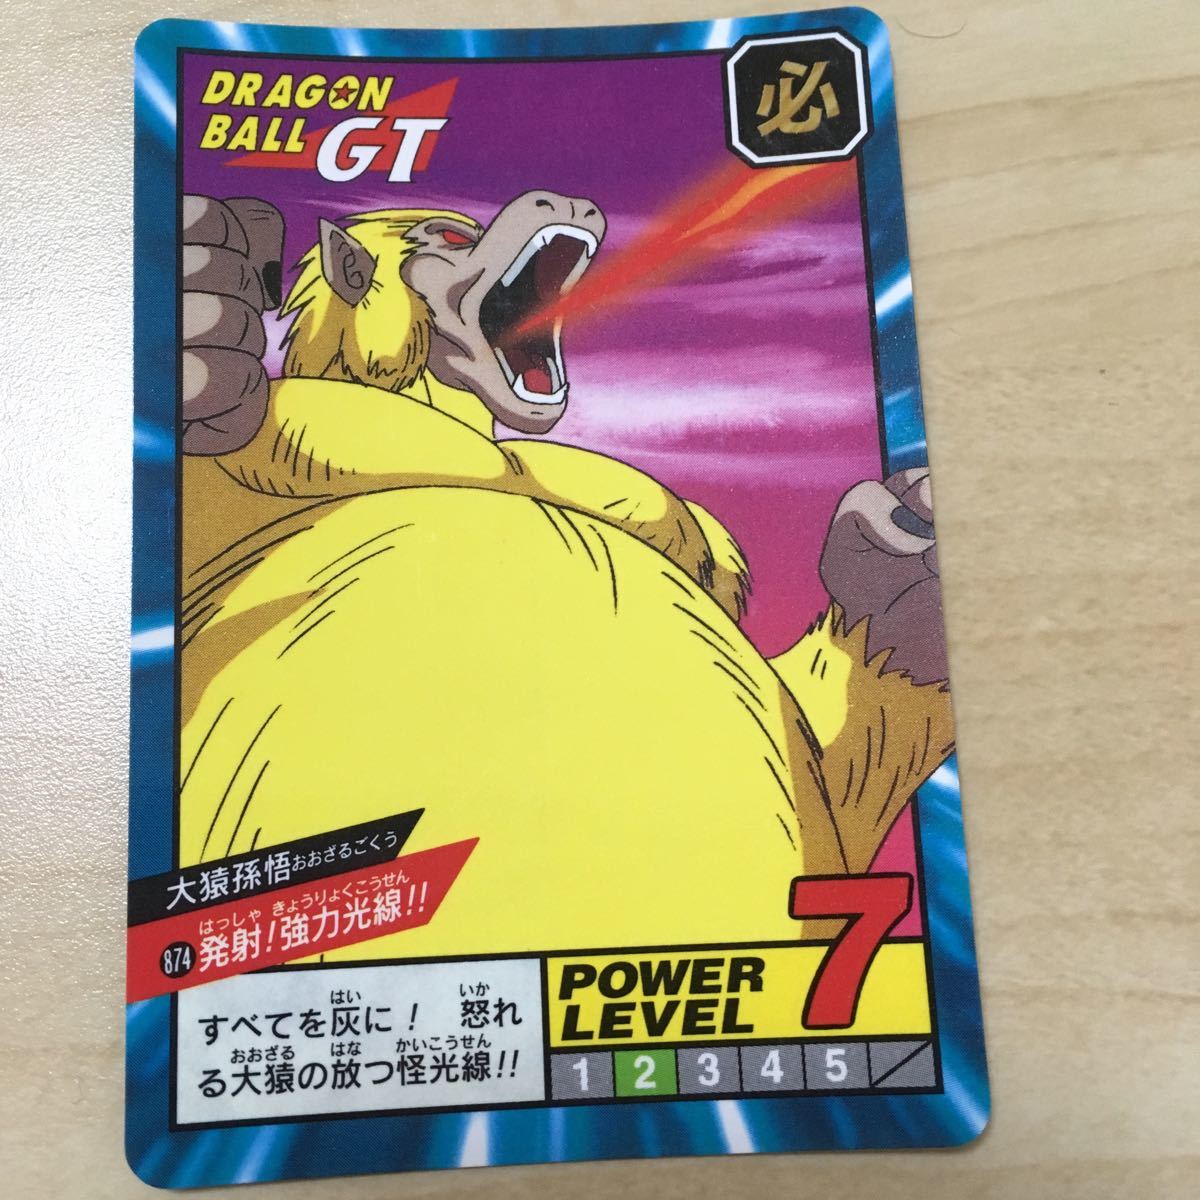 Dragon ball GT Super battle Power Level 874 